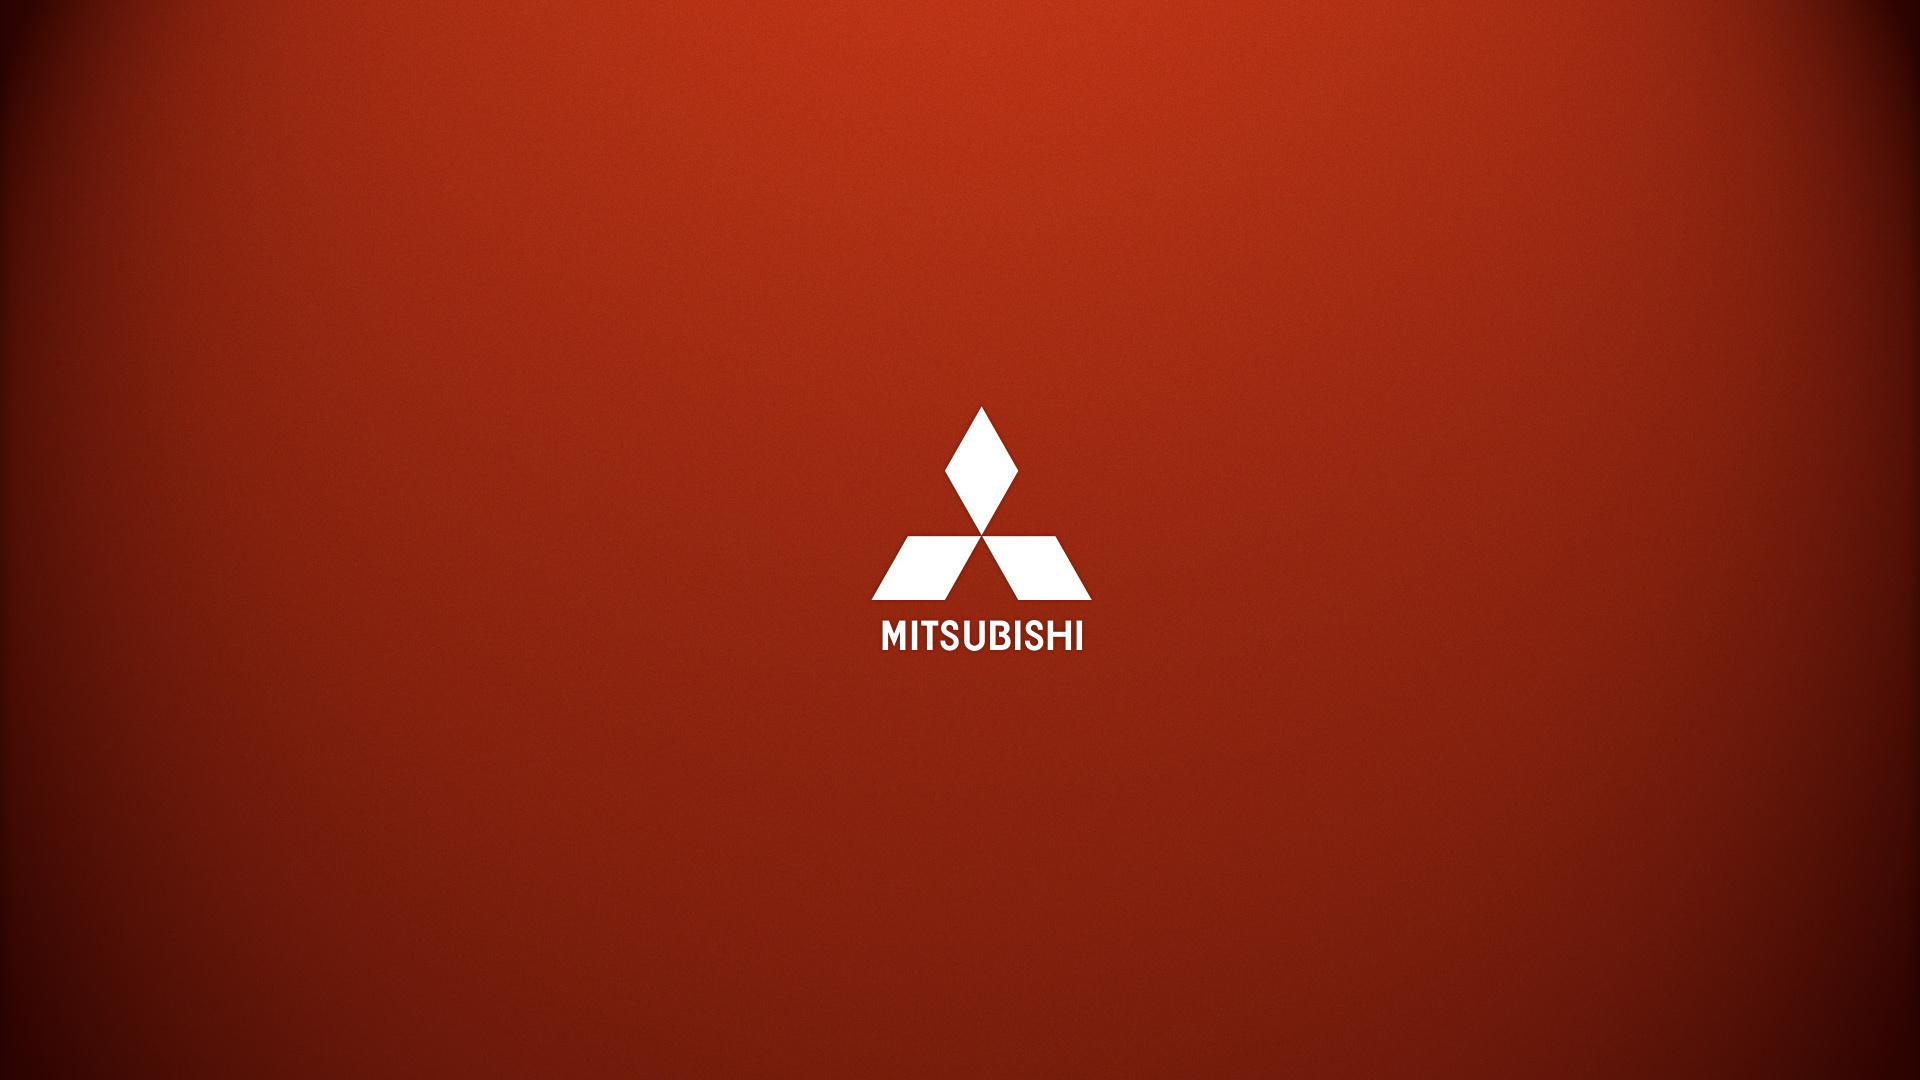 Mitsubishi Logo Wallpaper Imagebank Biz